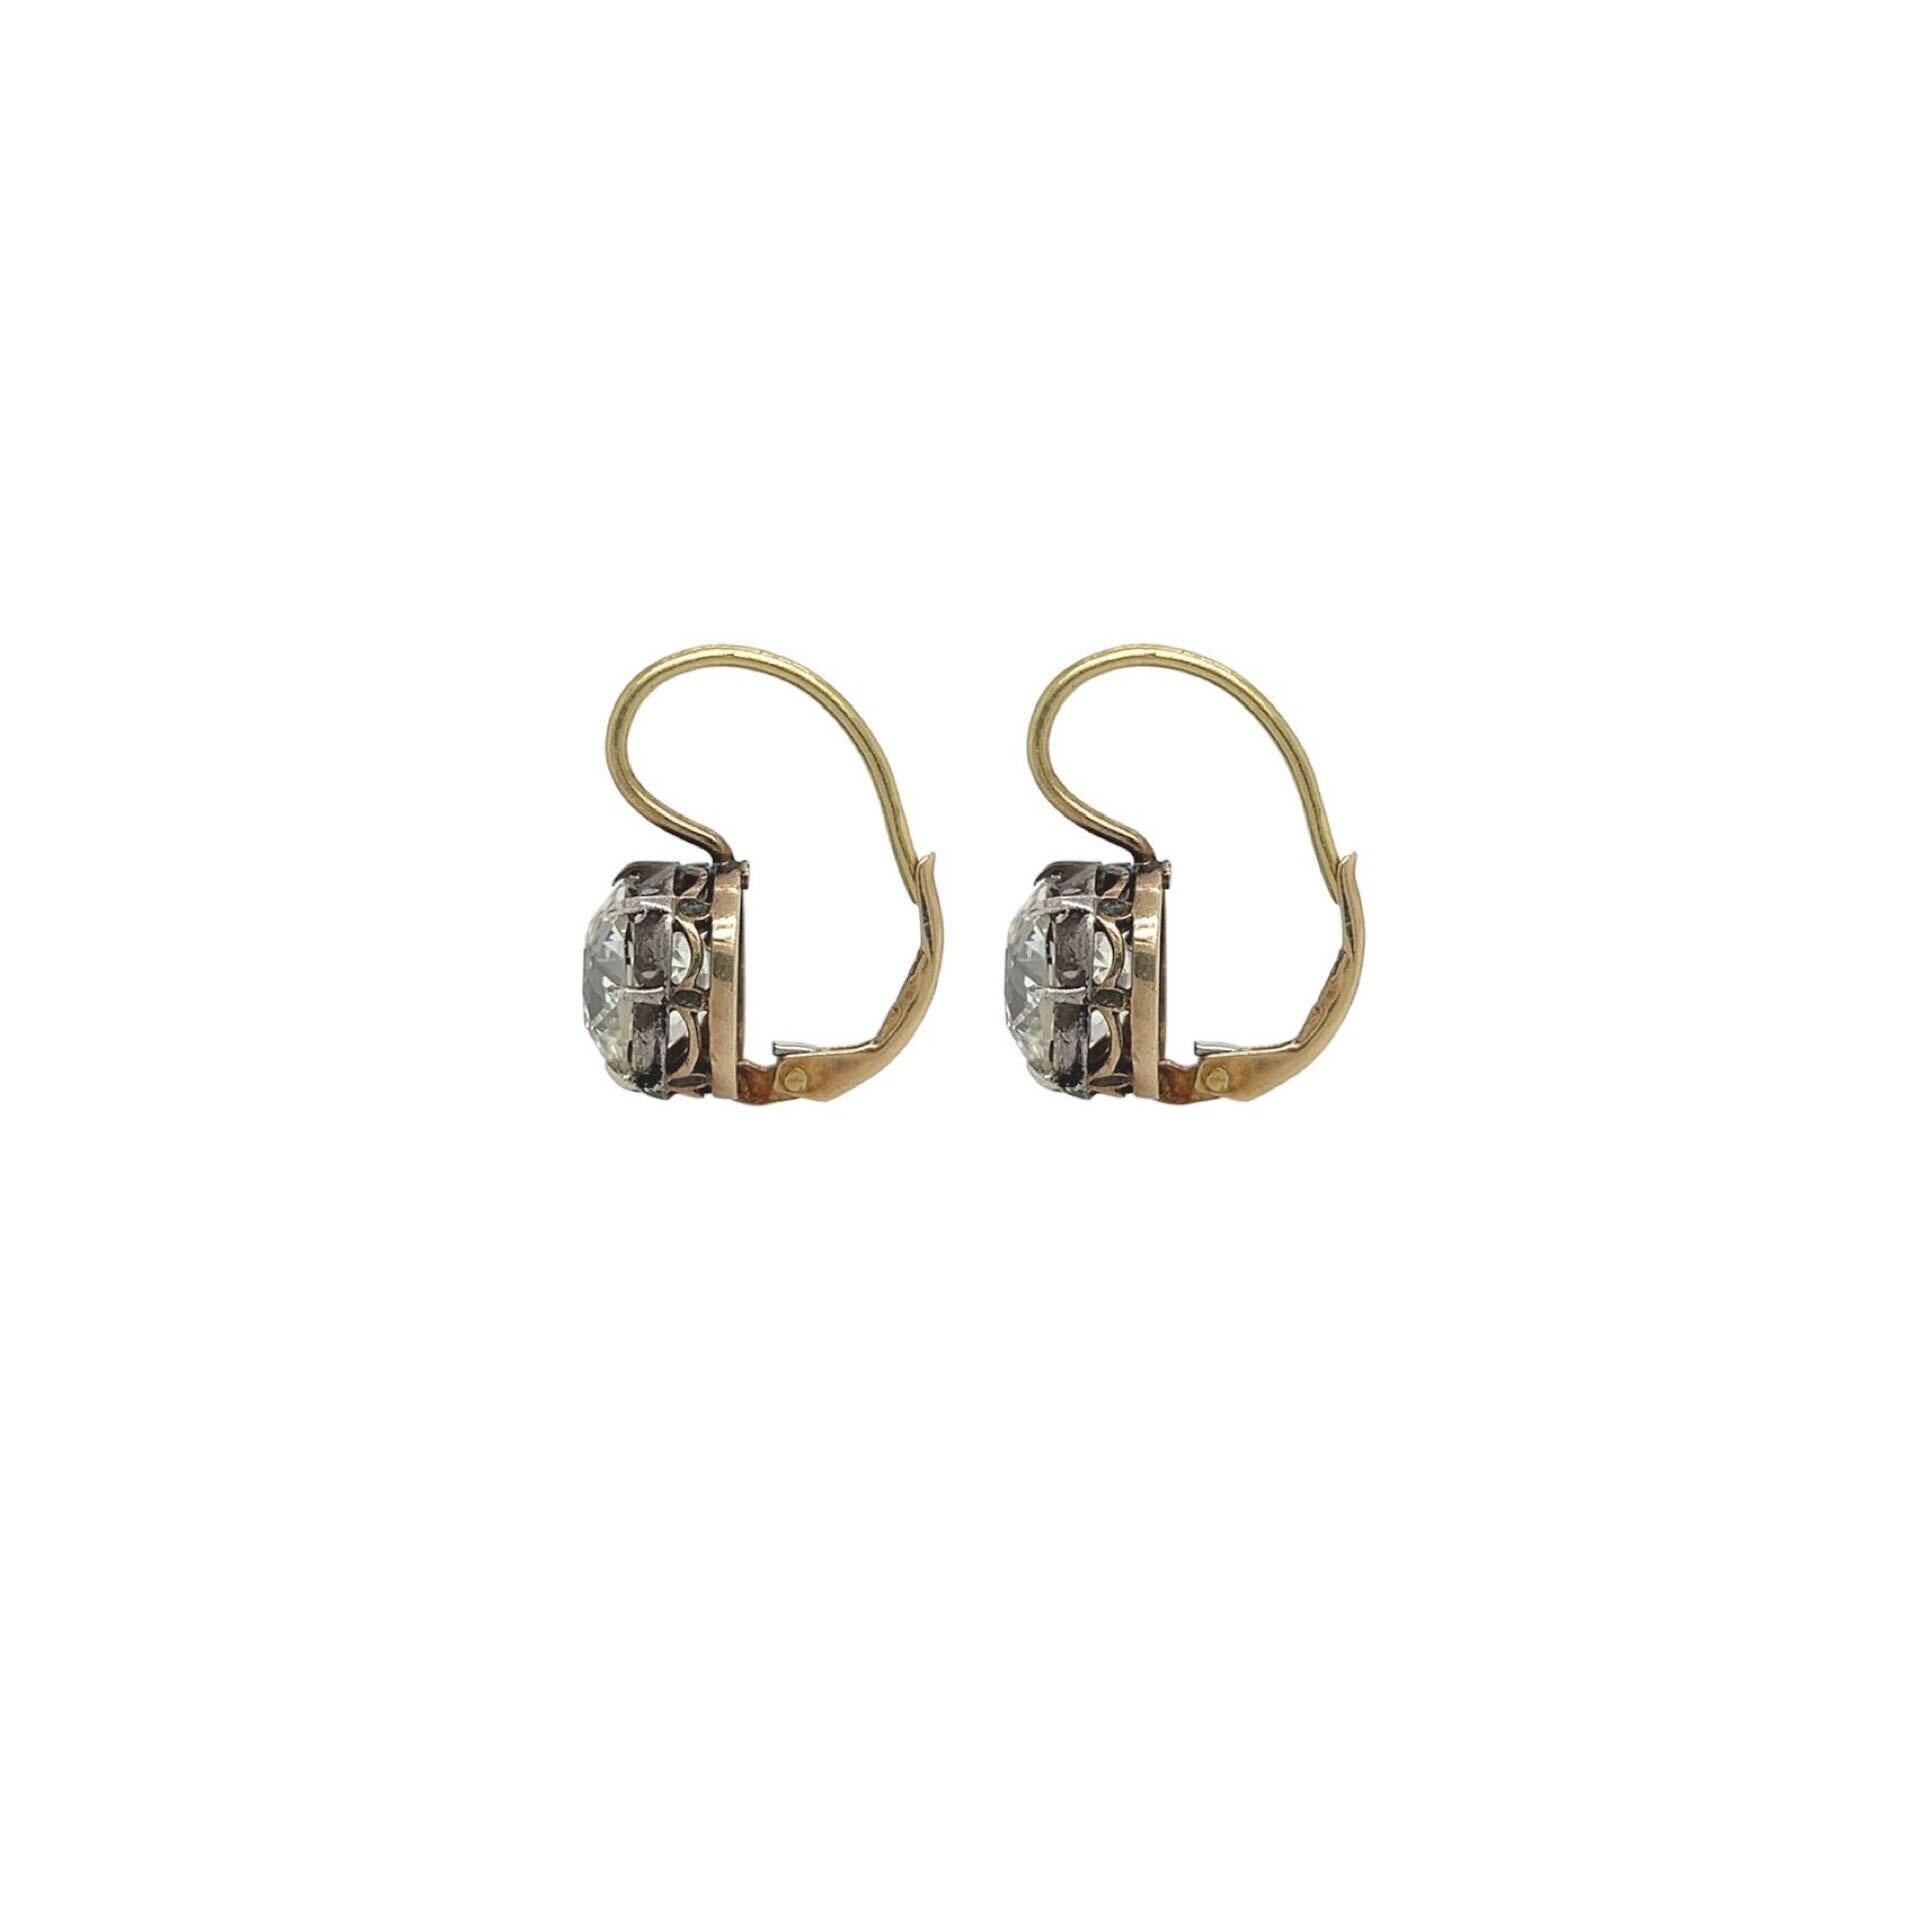 Ein Paar Ohrringe aus Silber mit Gold und Diamanten.  Der eine ist mit einem alten Minenschliff-Diamanten von 3,26 Karat besetzt, der andere mit einem alten Mind-Cut-Diamanten von 3,53 Karat.